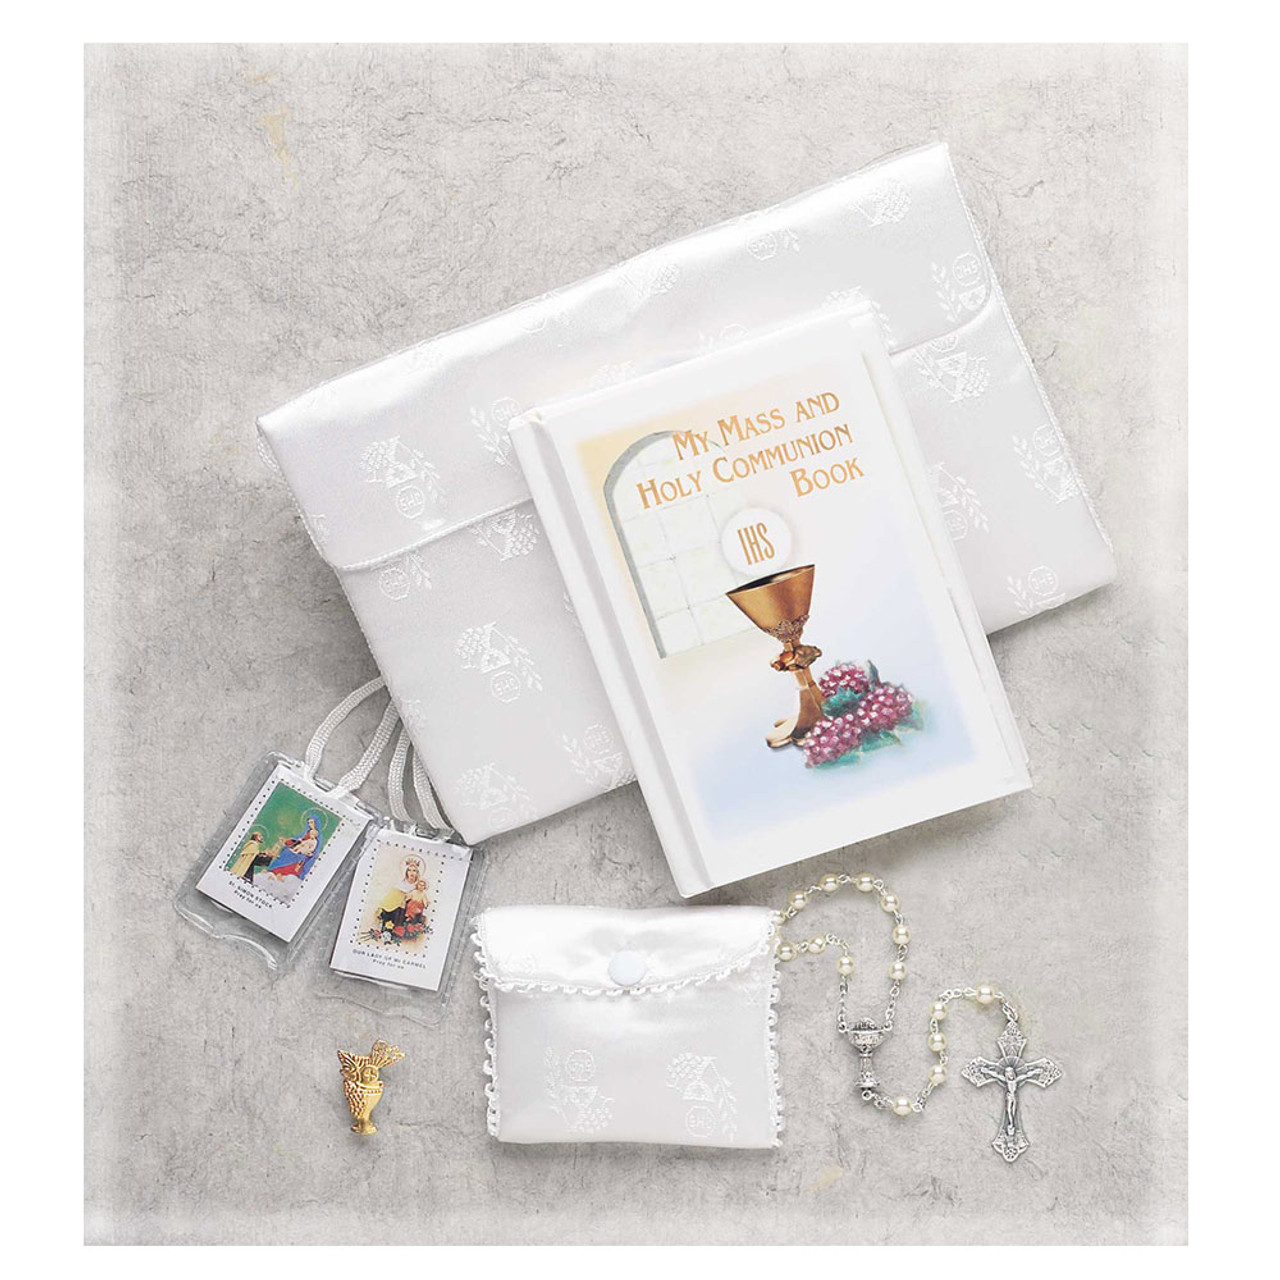 Buy LADILA Girls Sling Bag - Mini (White) at Amazon.in